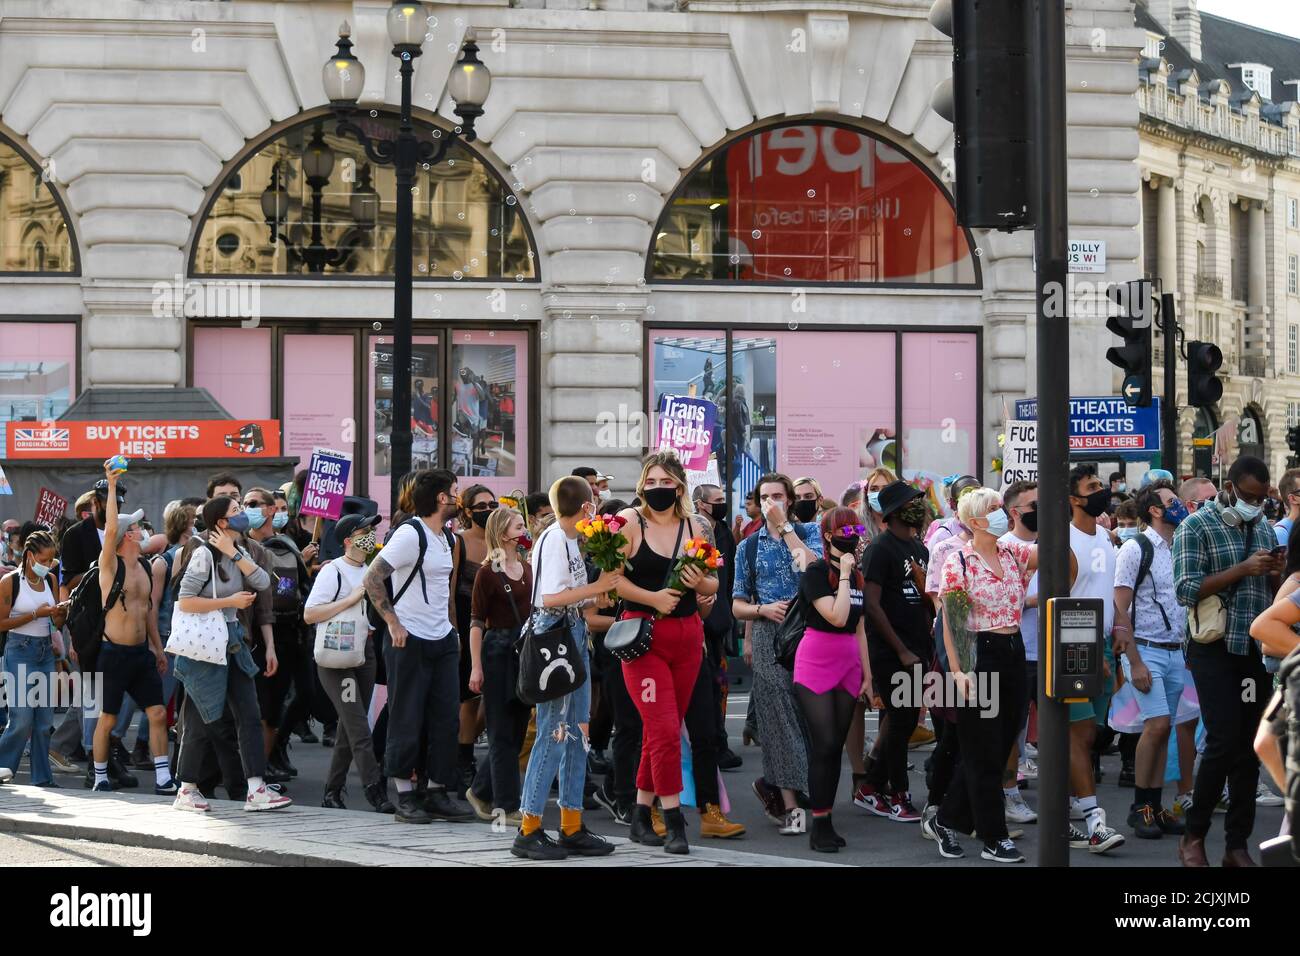 Scattata il 12 settembre 2020, la marcia Trans Gender Rights a Londra, foto scattate al Piccadilly Circus di Londra. Foto Stock